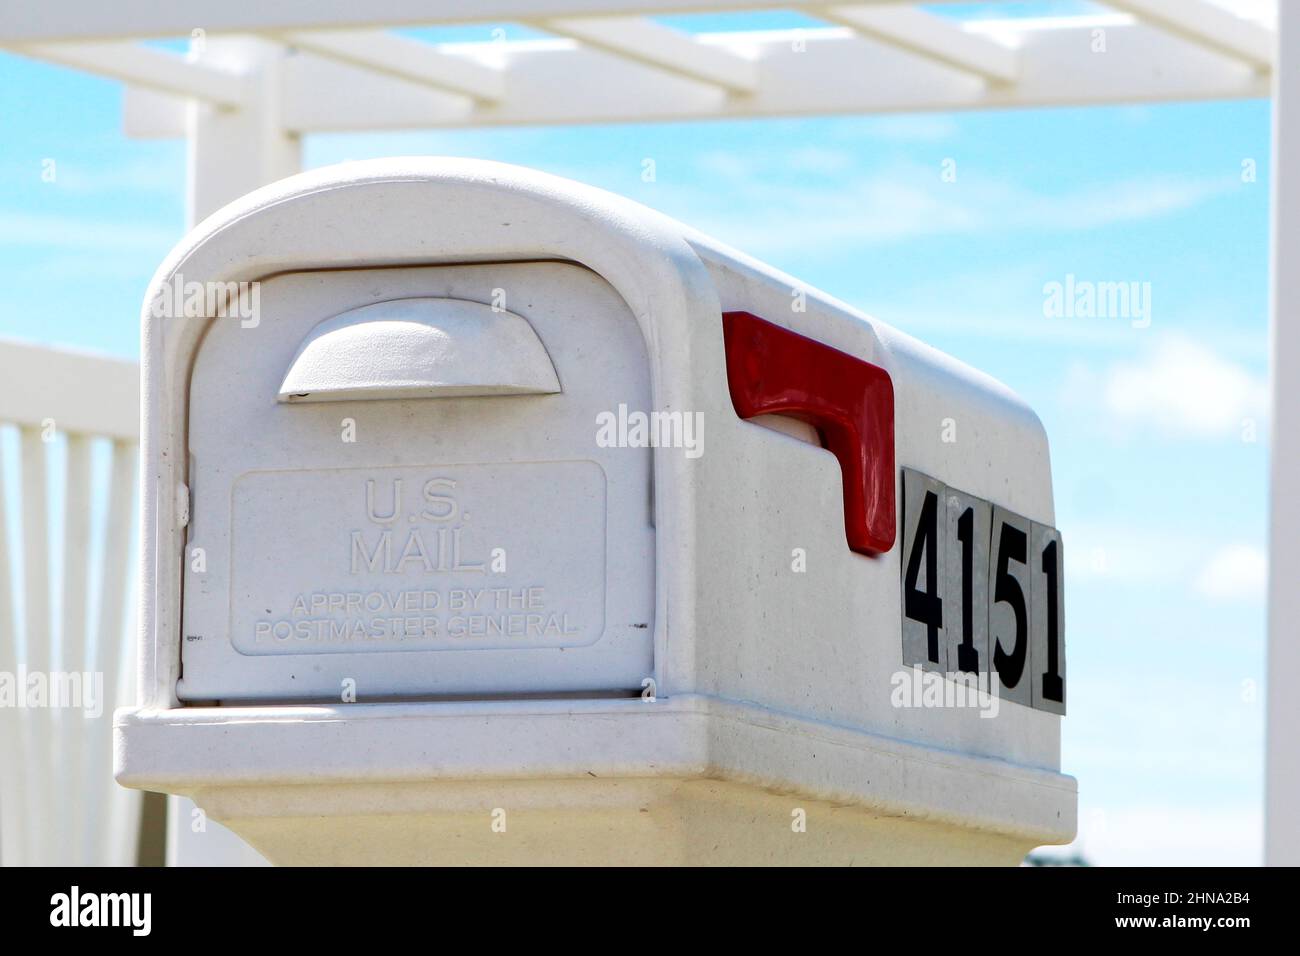 Weißer US Mail Briekasten mit roter Signalfahne vor einer weißen Veranda en Florida, Estados Unidos. Foto de stock